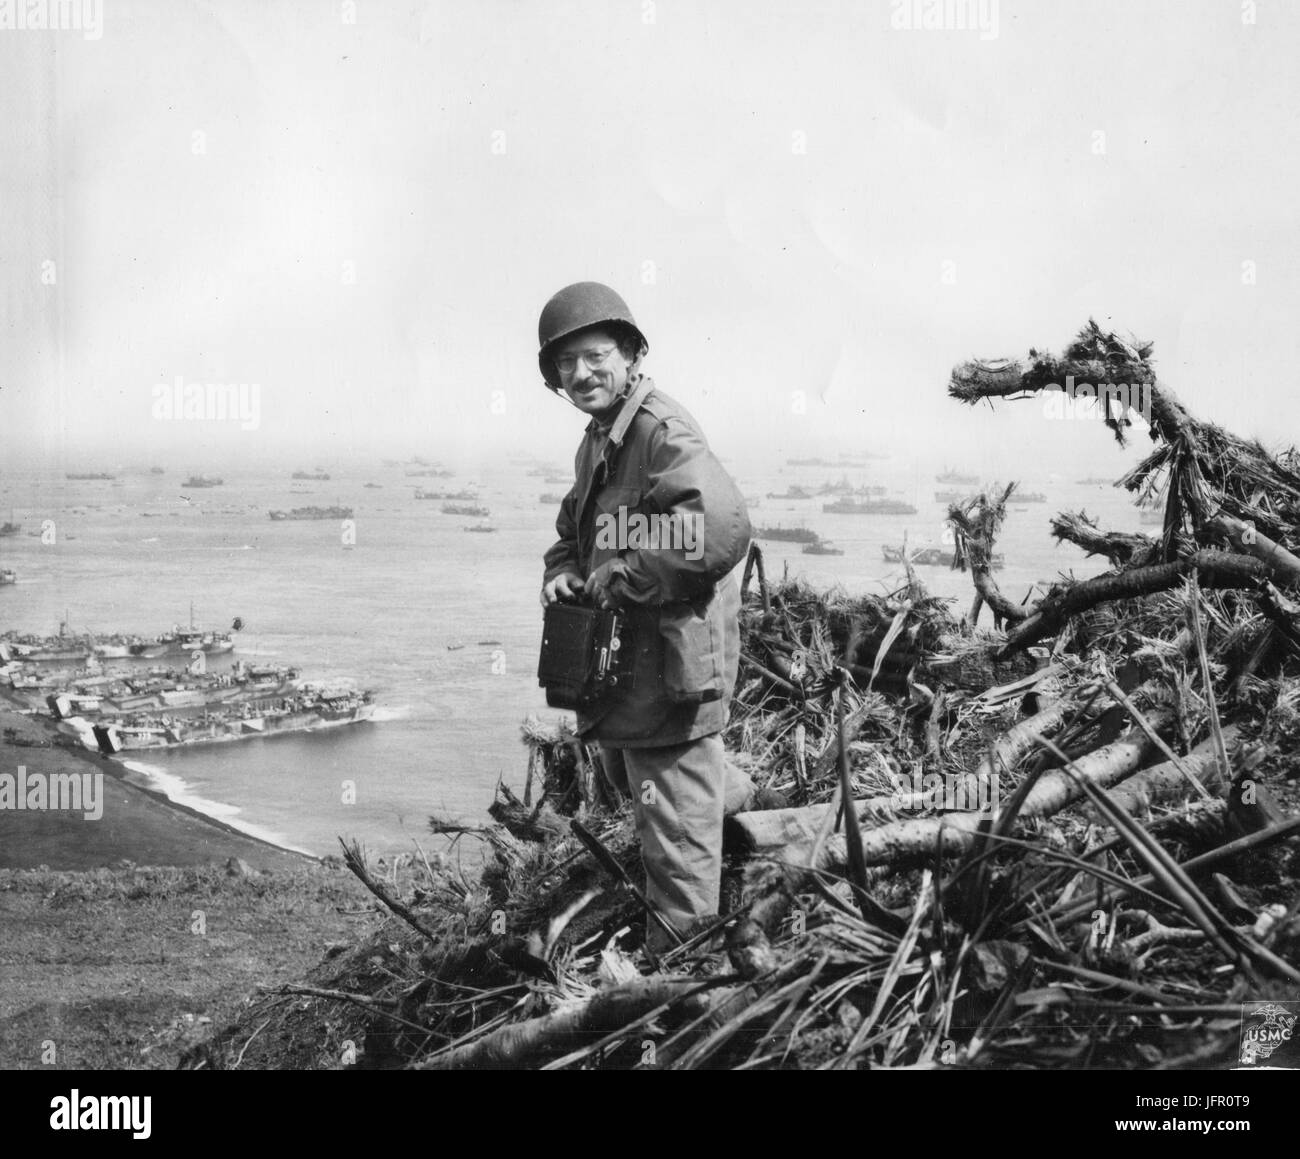 Joe Rosenthal, photographe de l'Associated Press posant sur sommet de Mt. Suribachi, Iwo Jima, Mars 1, 1945 Banque D'Images